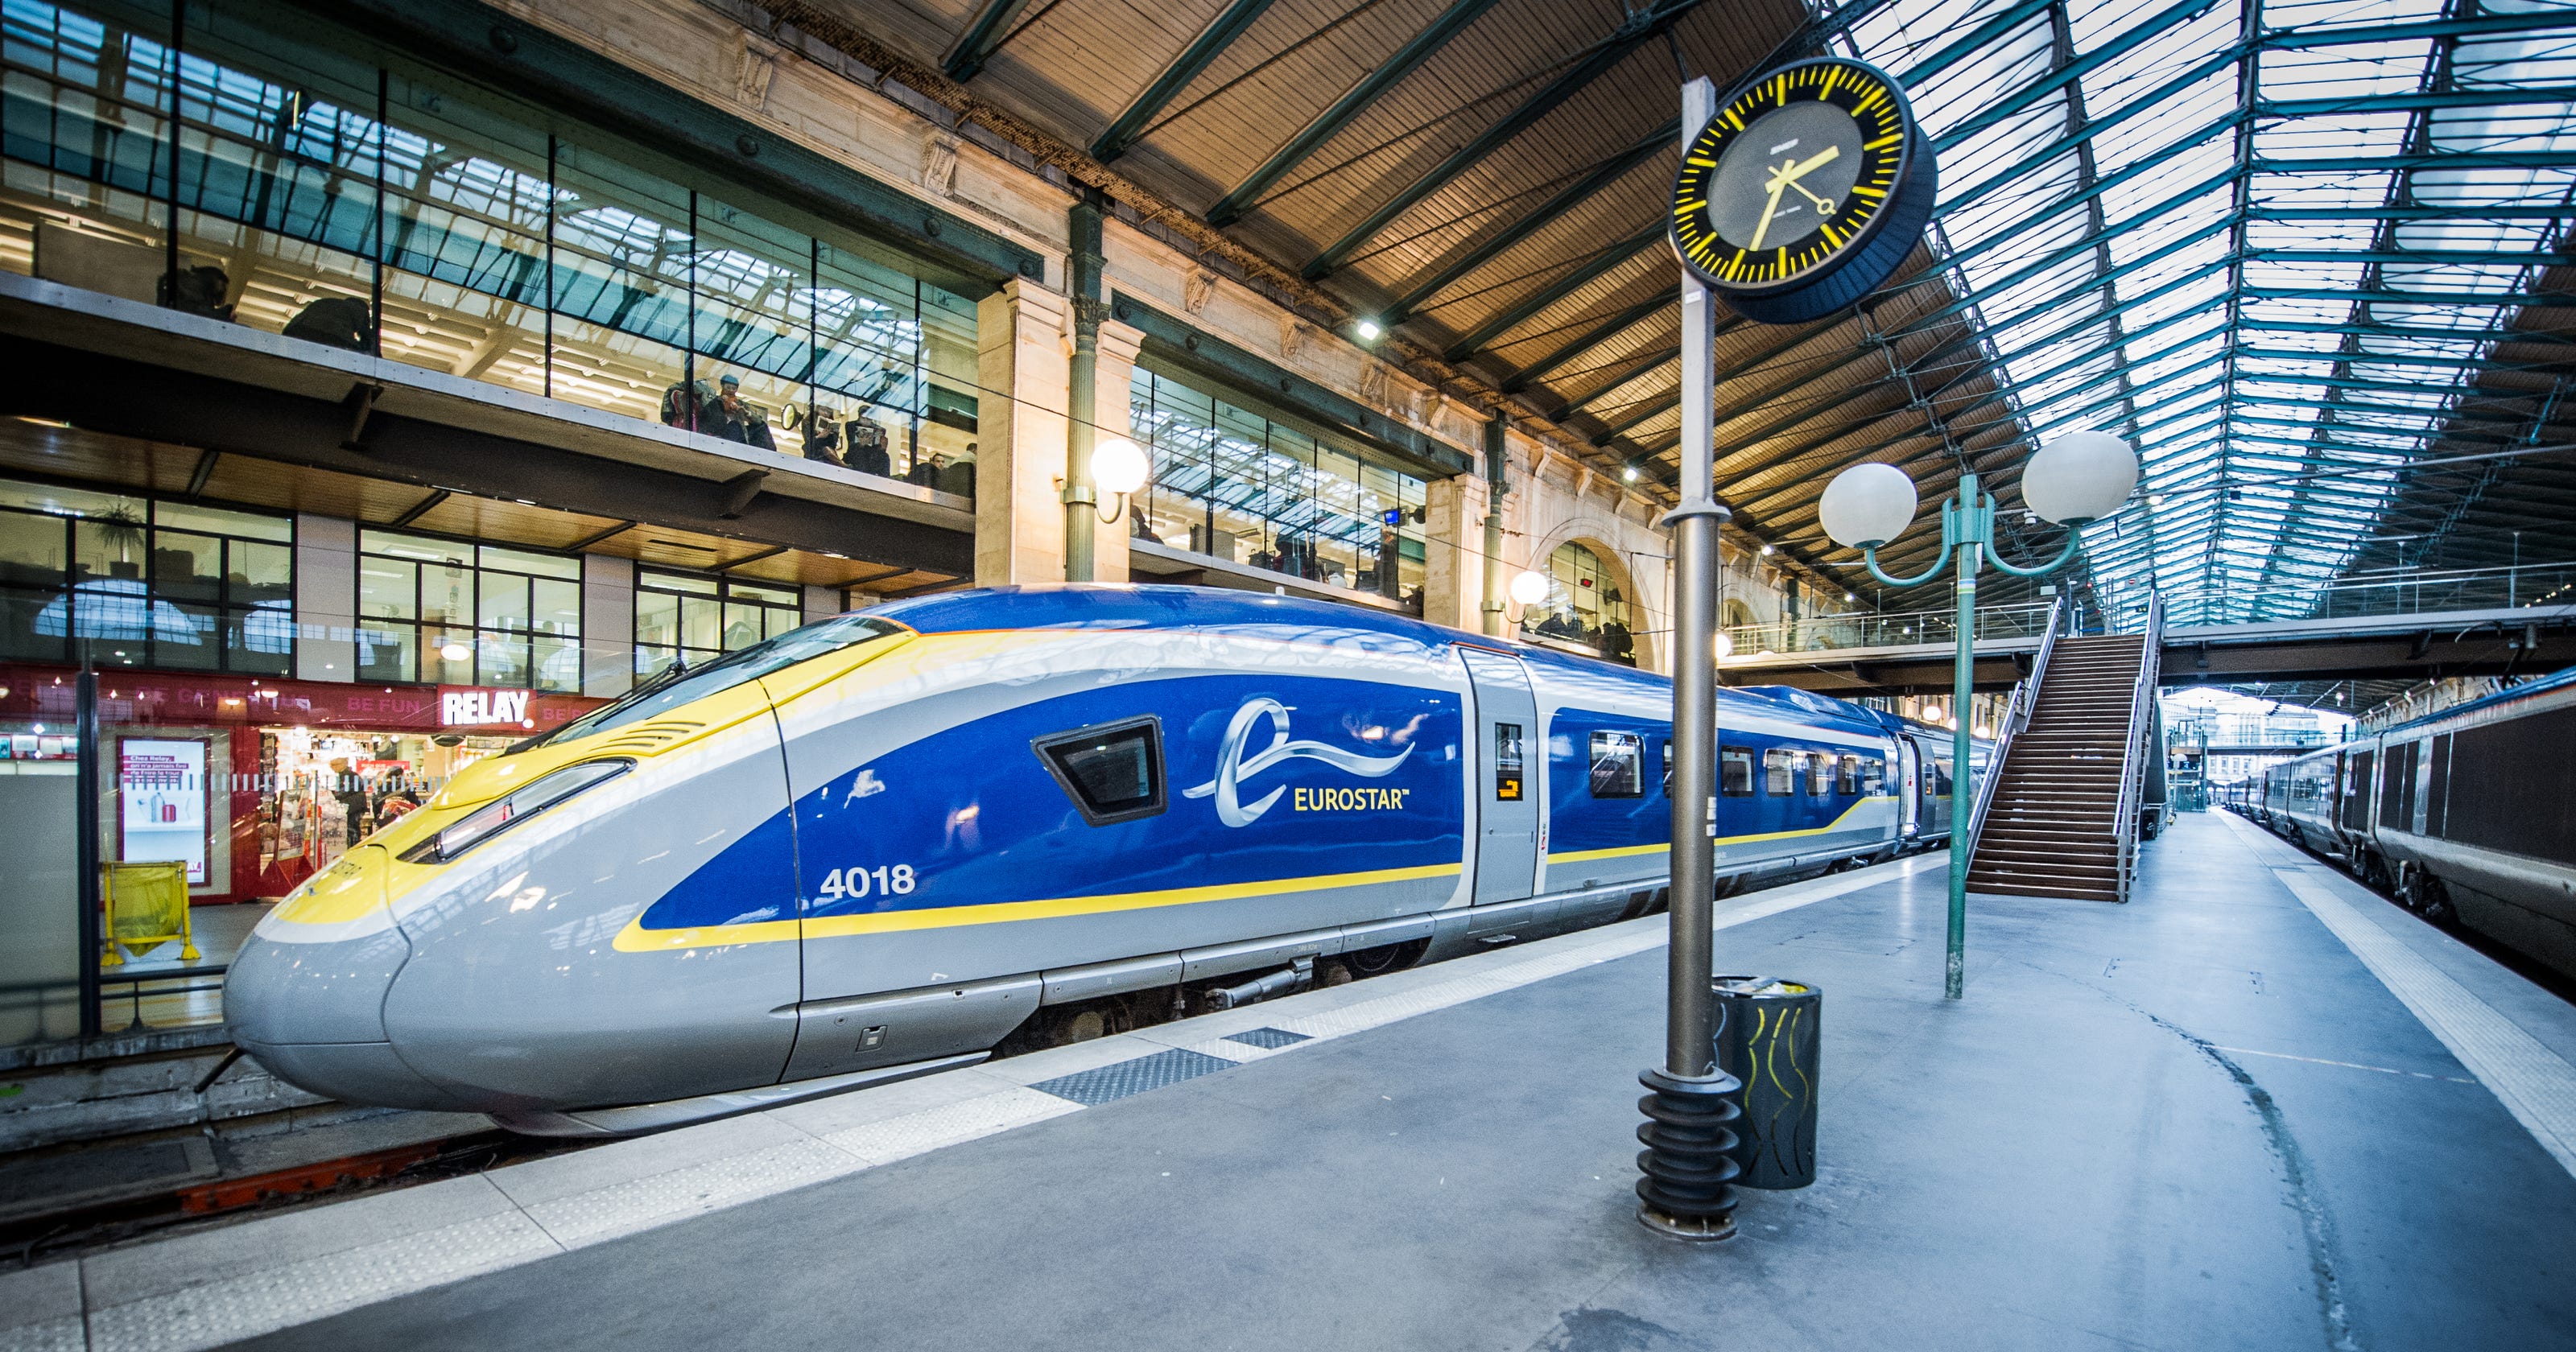 eurostar train journey length